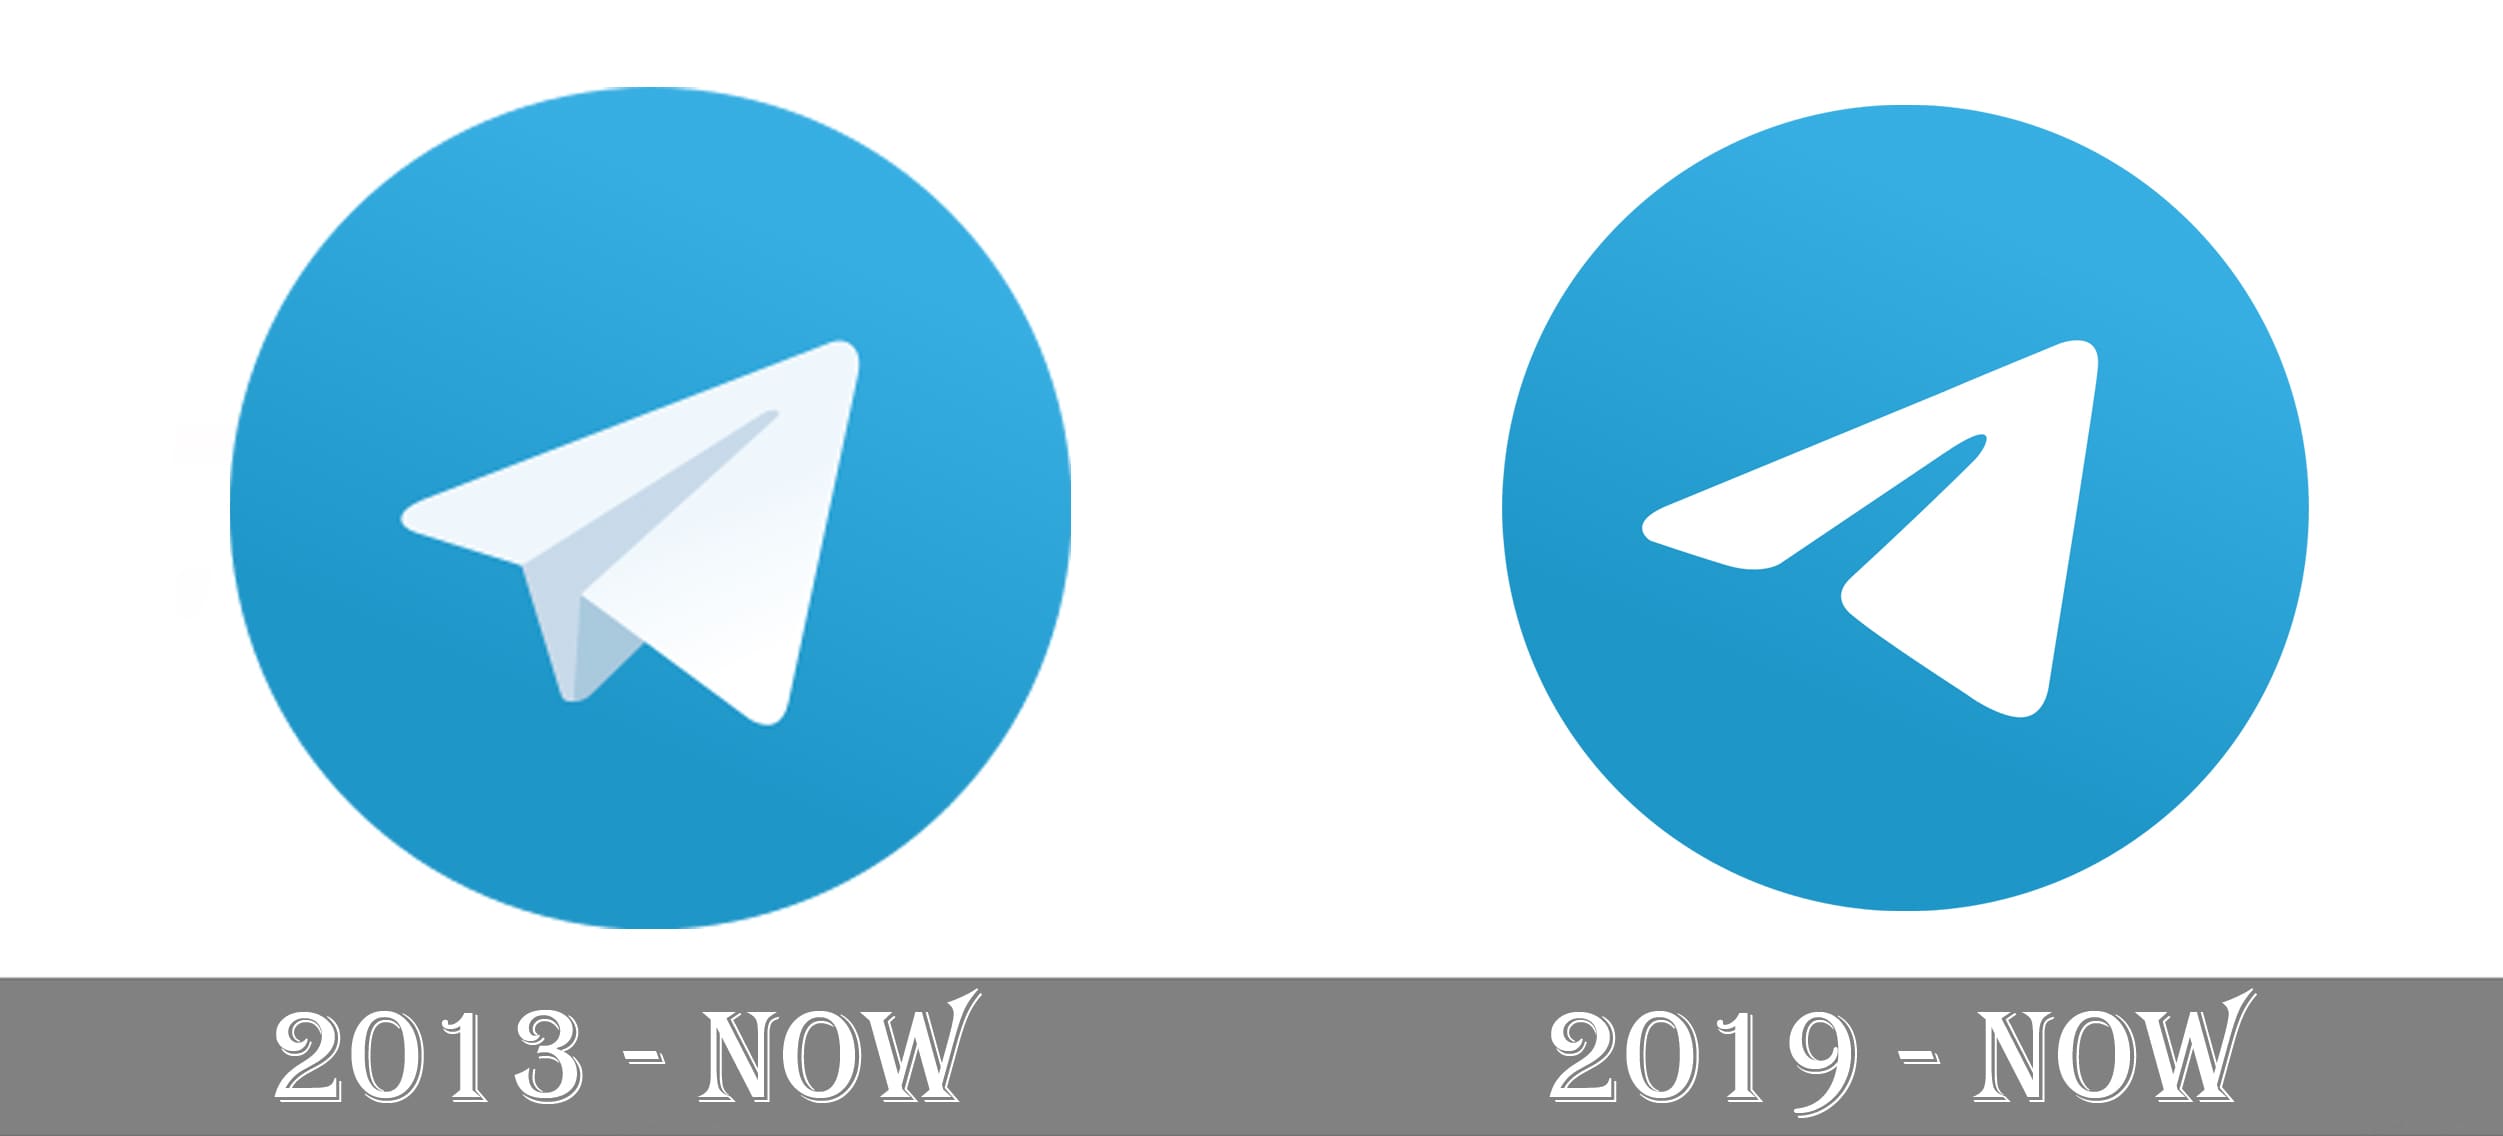 Telegram pictures. Логотип Telegram. Телега логотип. Пиктограмма телеграмм. Старый логотип телеграмма.